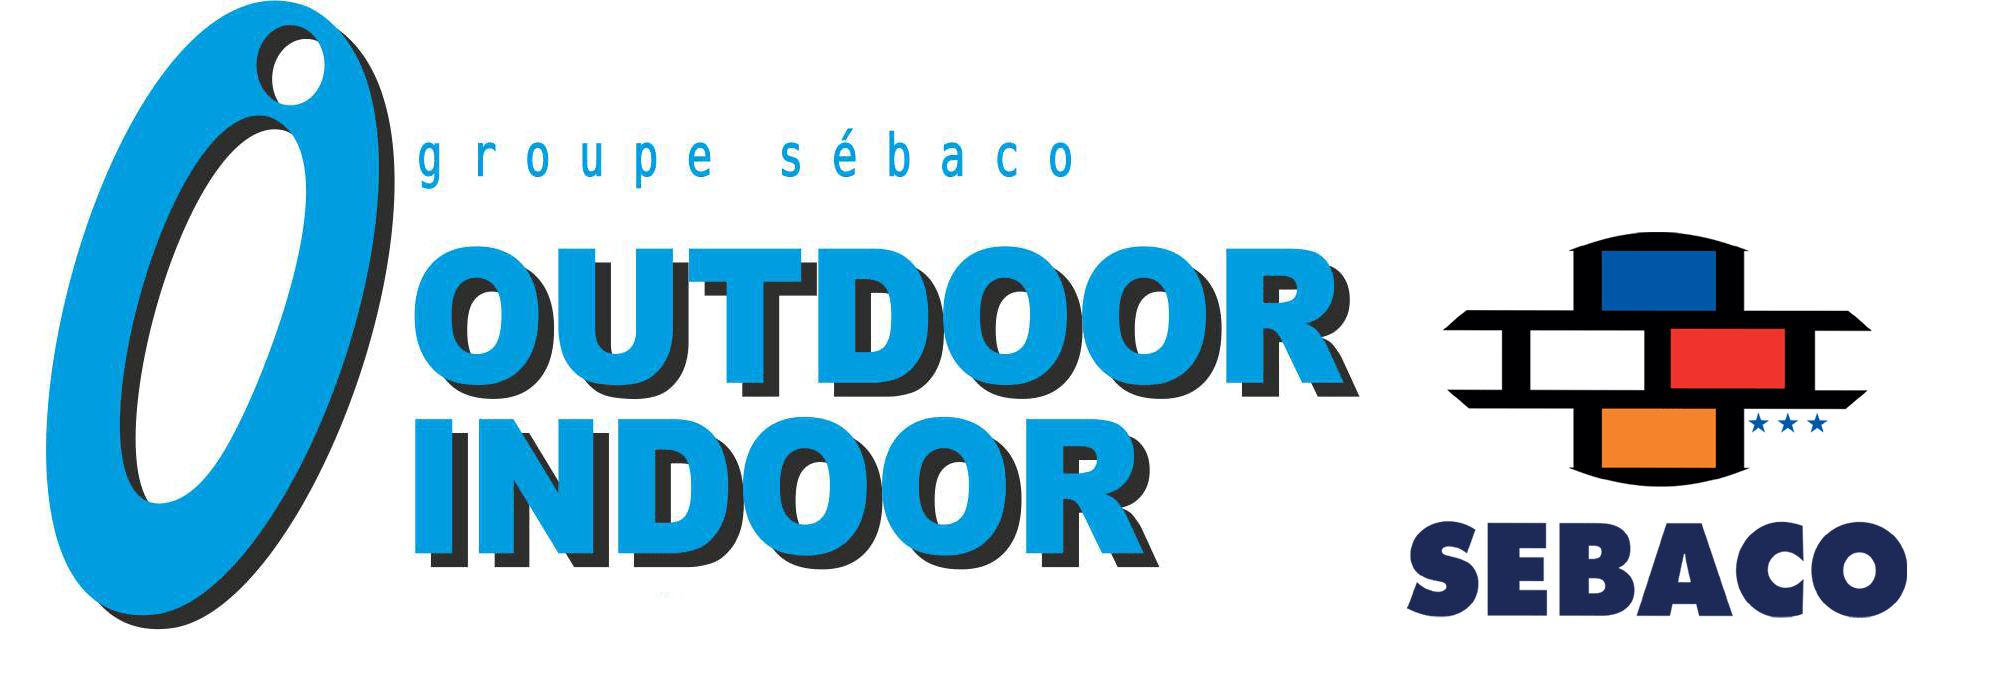 logo_outdoor_indoor_sebaco